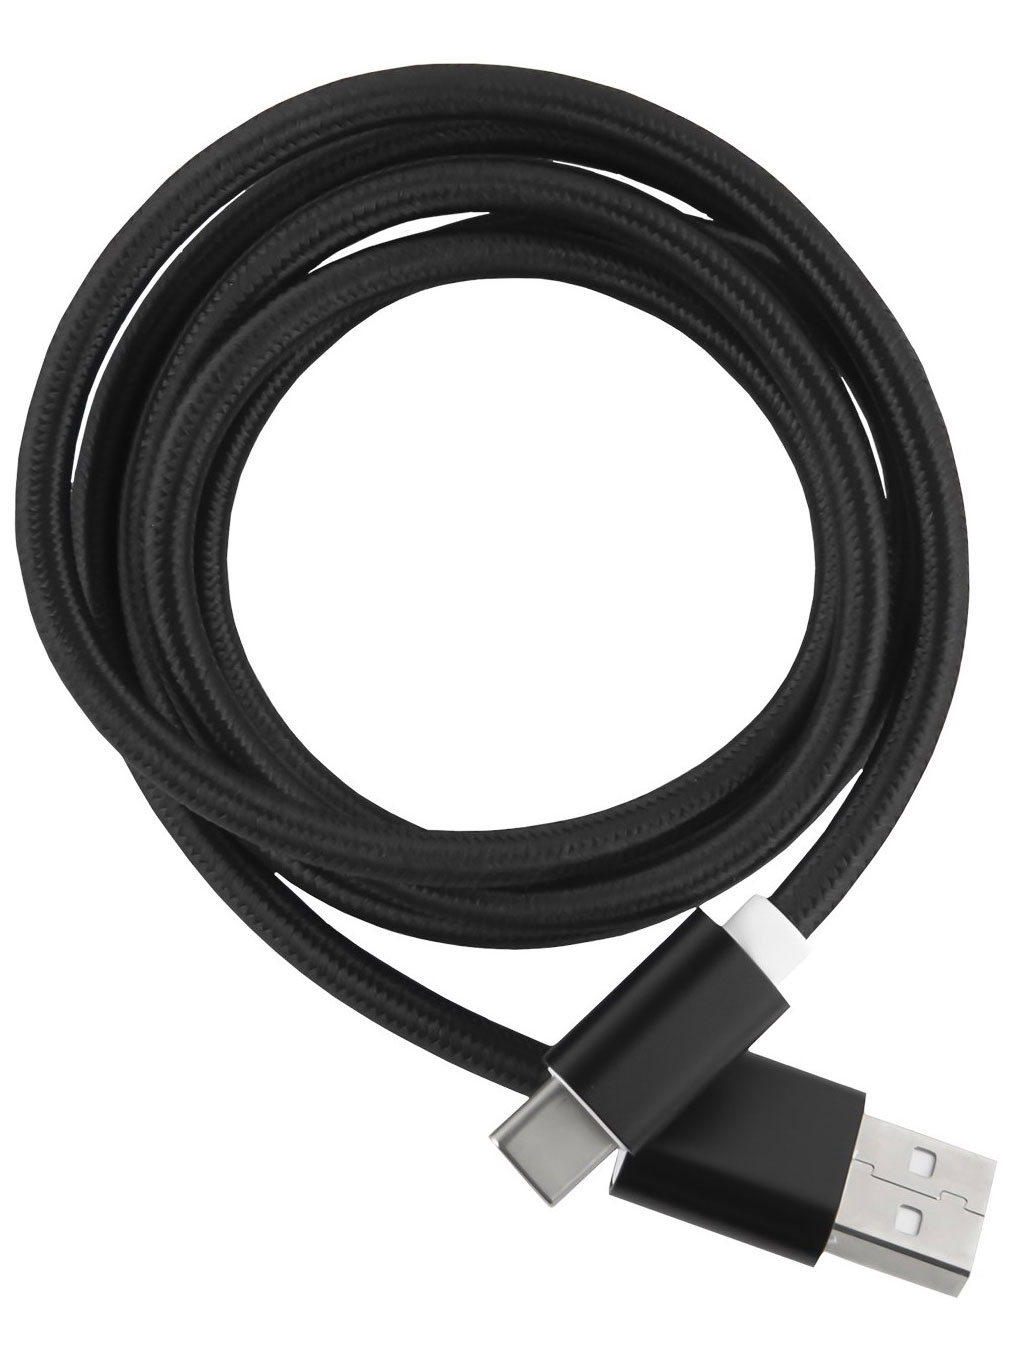 Кабель Red Line USB-Type-C 2.0 нейлоновая оплетка, черный дата кабель xiaomi 6a usb a type c 1м белый bhr6032gl